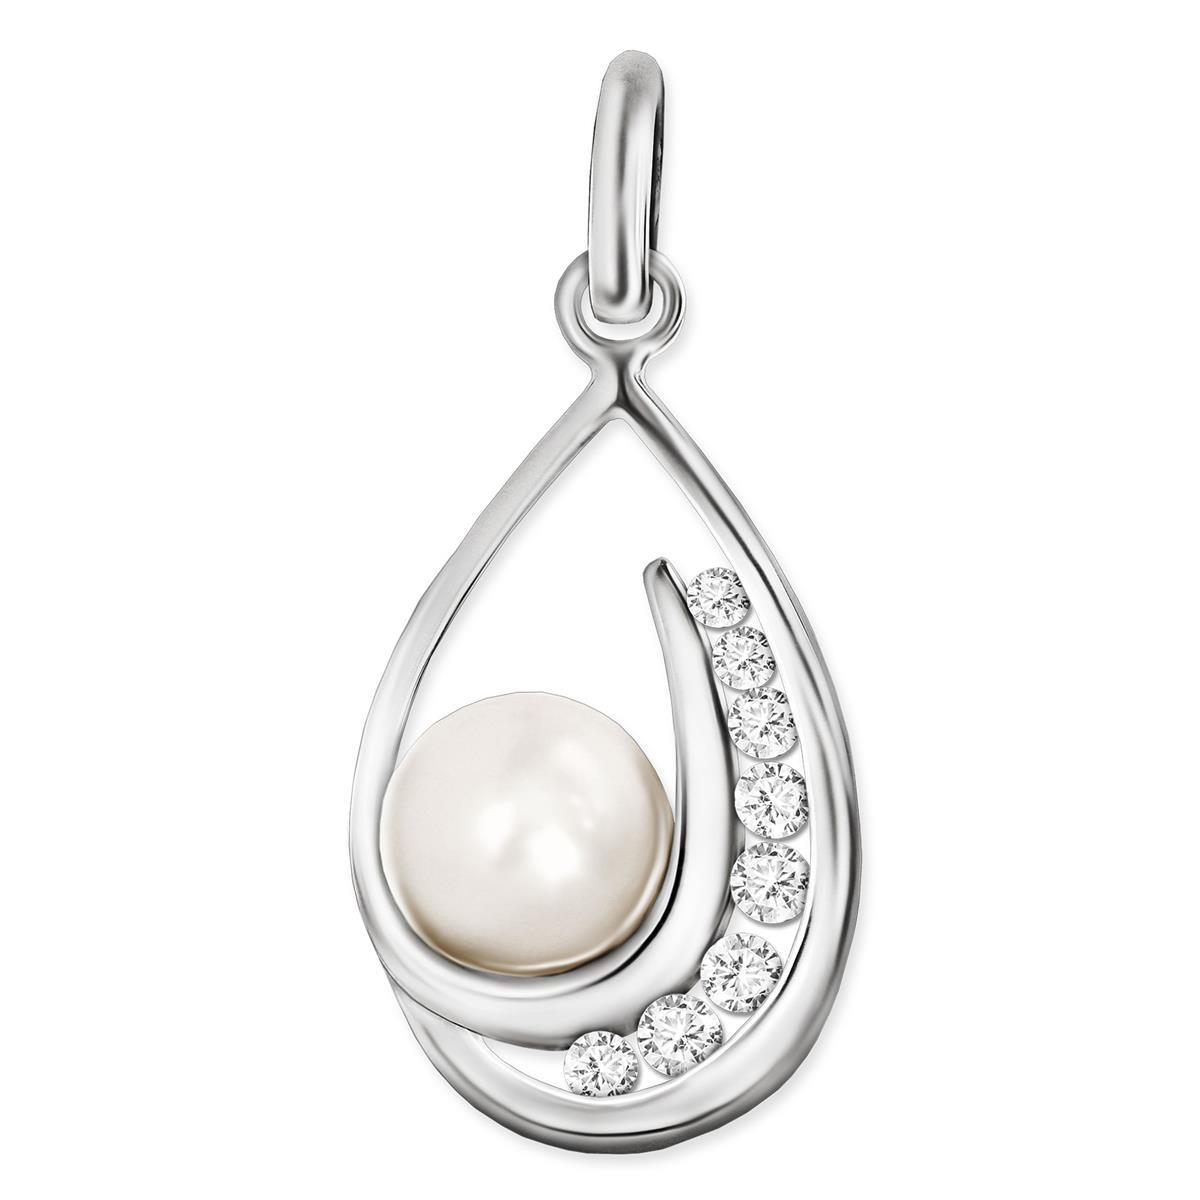 Silberner Perlenanhänger 10 x 17 mm mit Perle 5 mm Ø im tropfen rechte Seite viele Zirkonias STERLING SILBER 925 